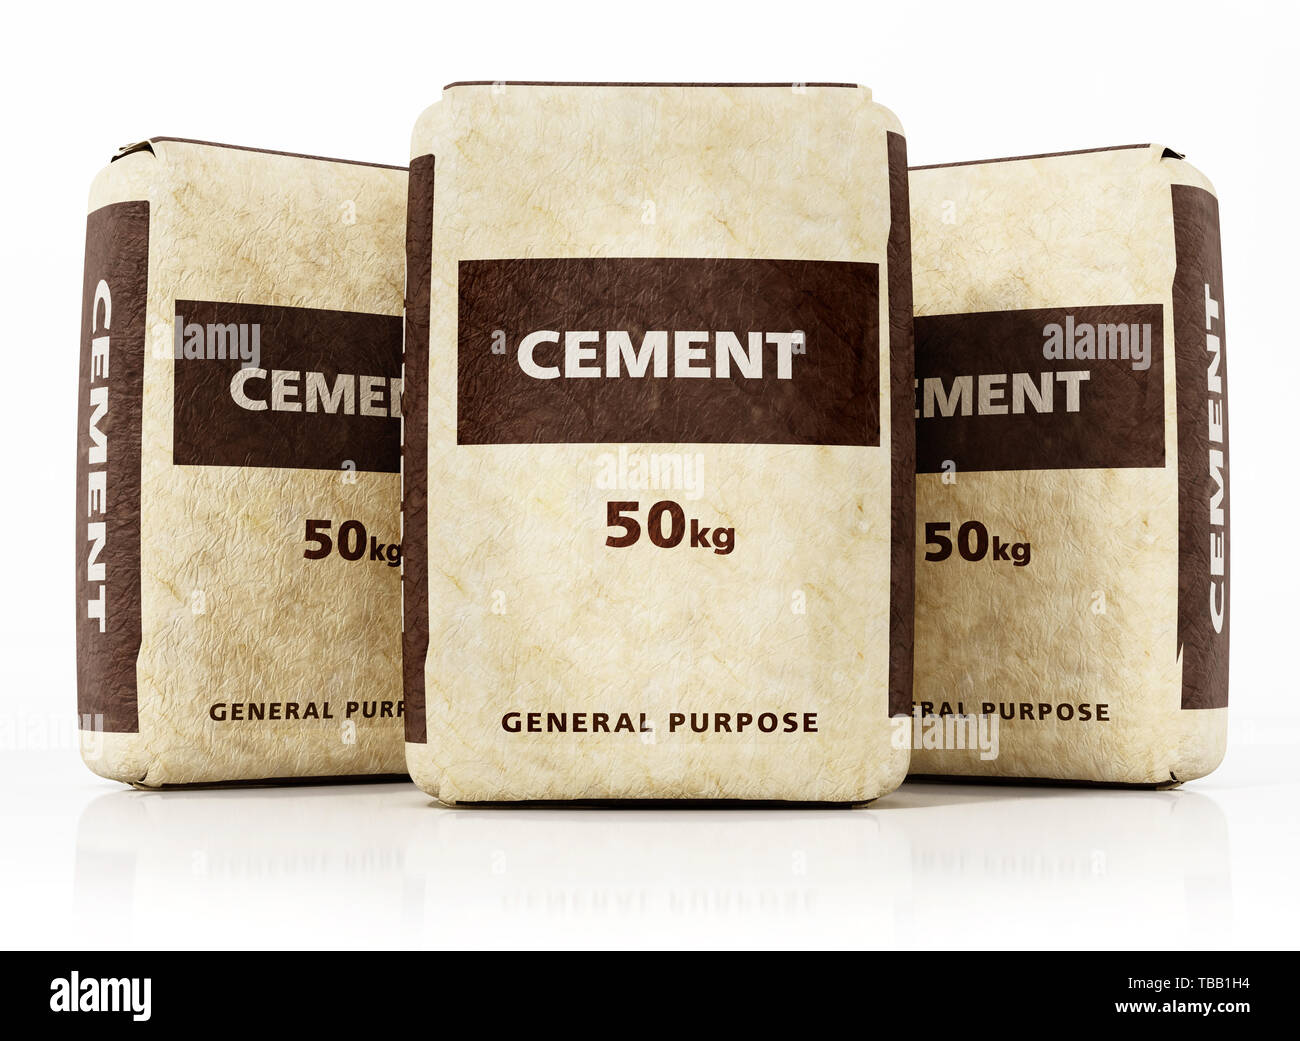 Cement bags immagini e fotografie stock ad alta risoluzione - Alamy